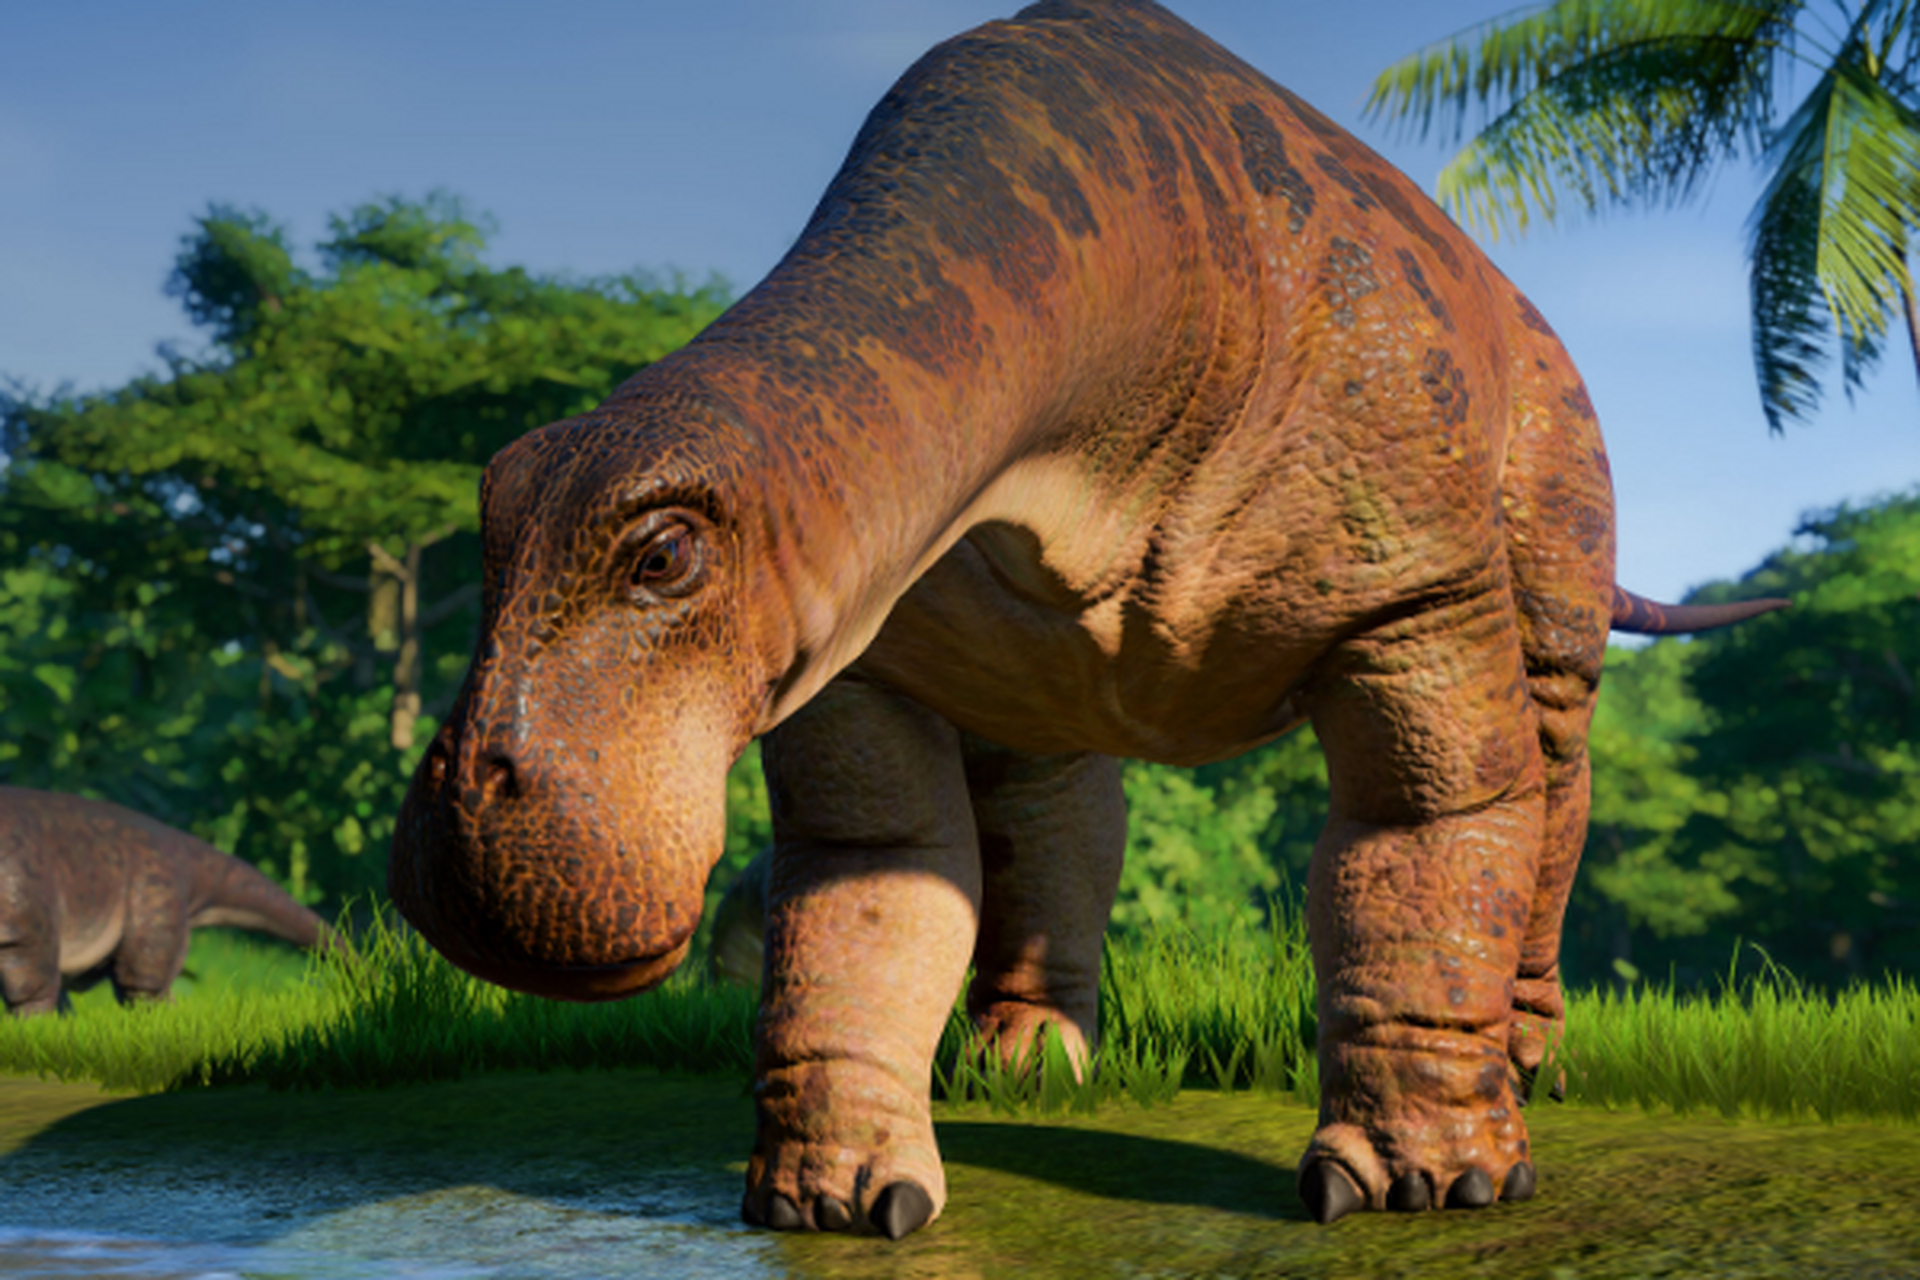 远古生物探秘——尼日尔龙 尼日尔龙是生存于白垩纪中期的食草性恐龙